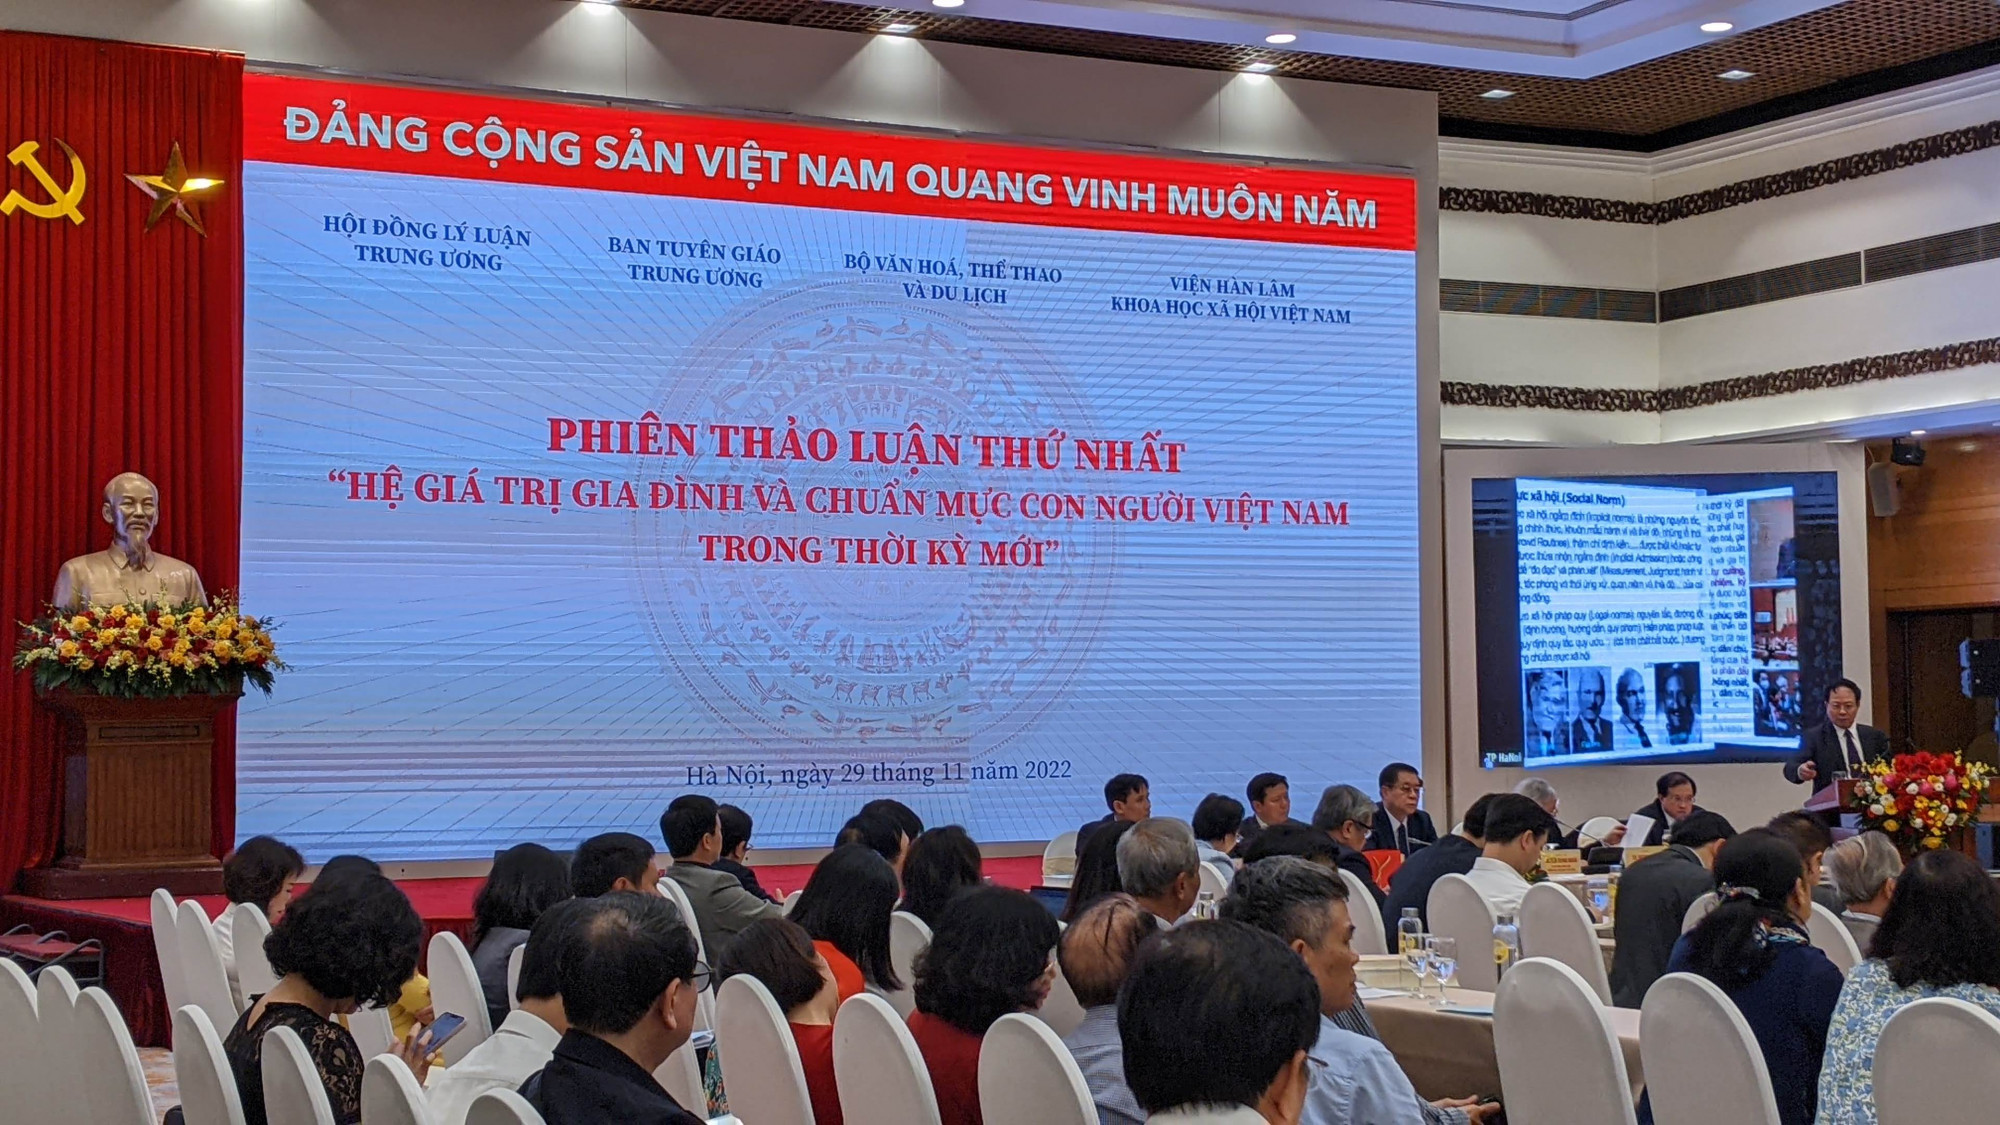 phiên thảo luận: “Hệ giá trị gia đình và chuẩn mực con người Việt Nam trong thời kỳ mới”